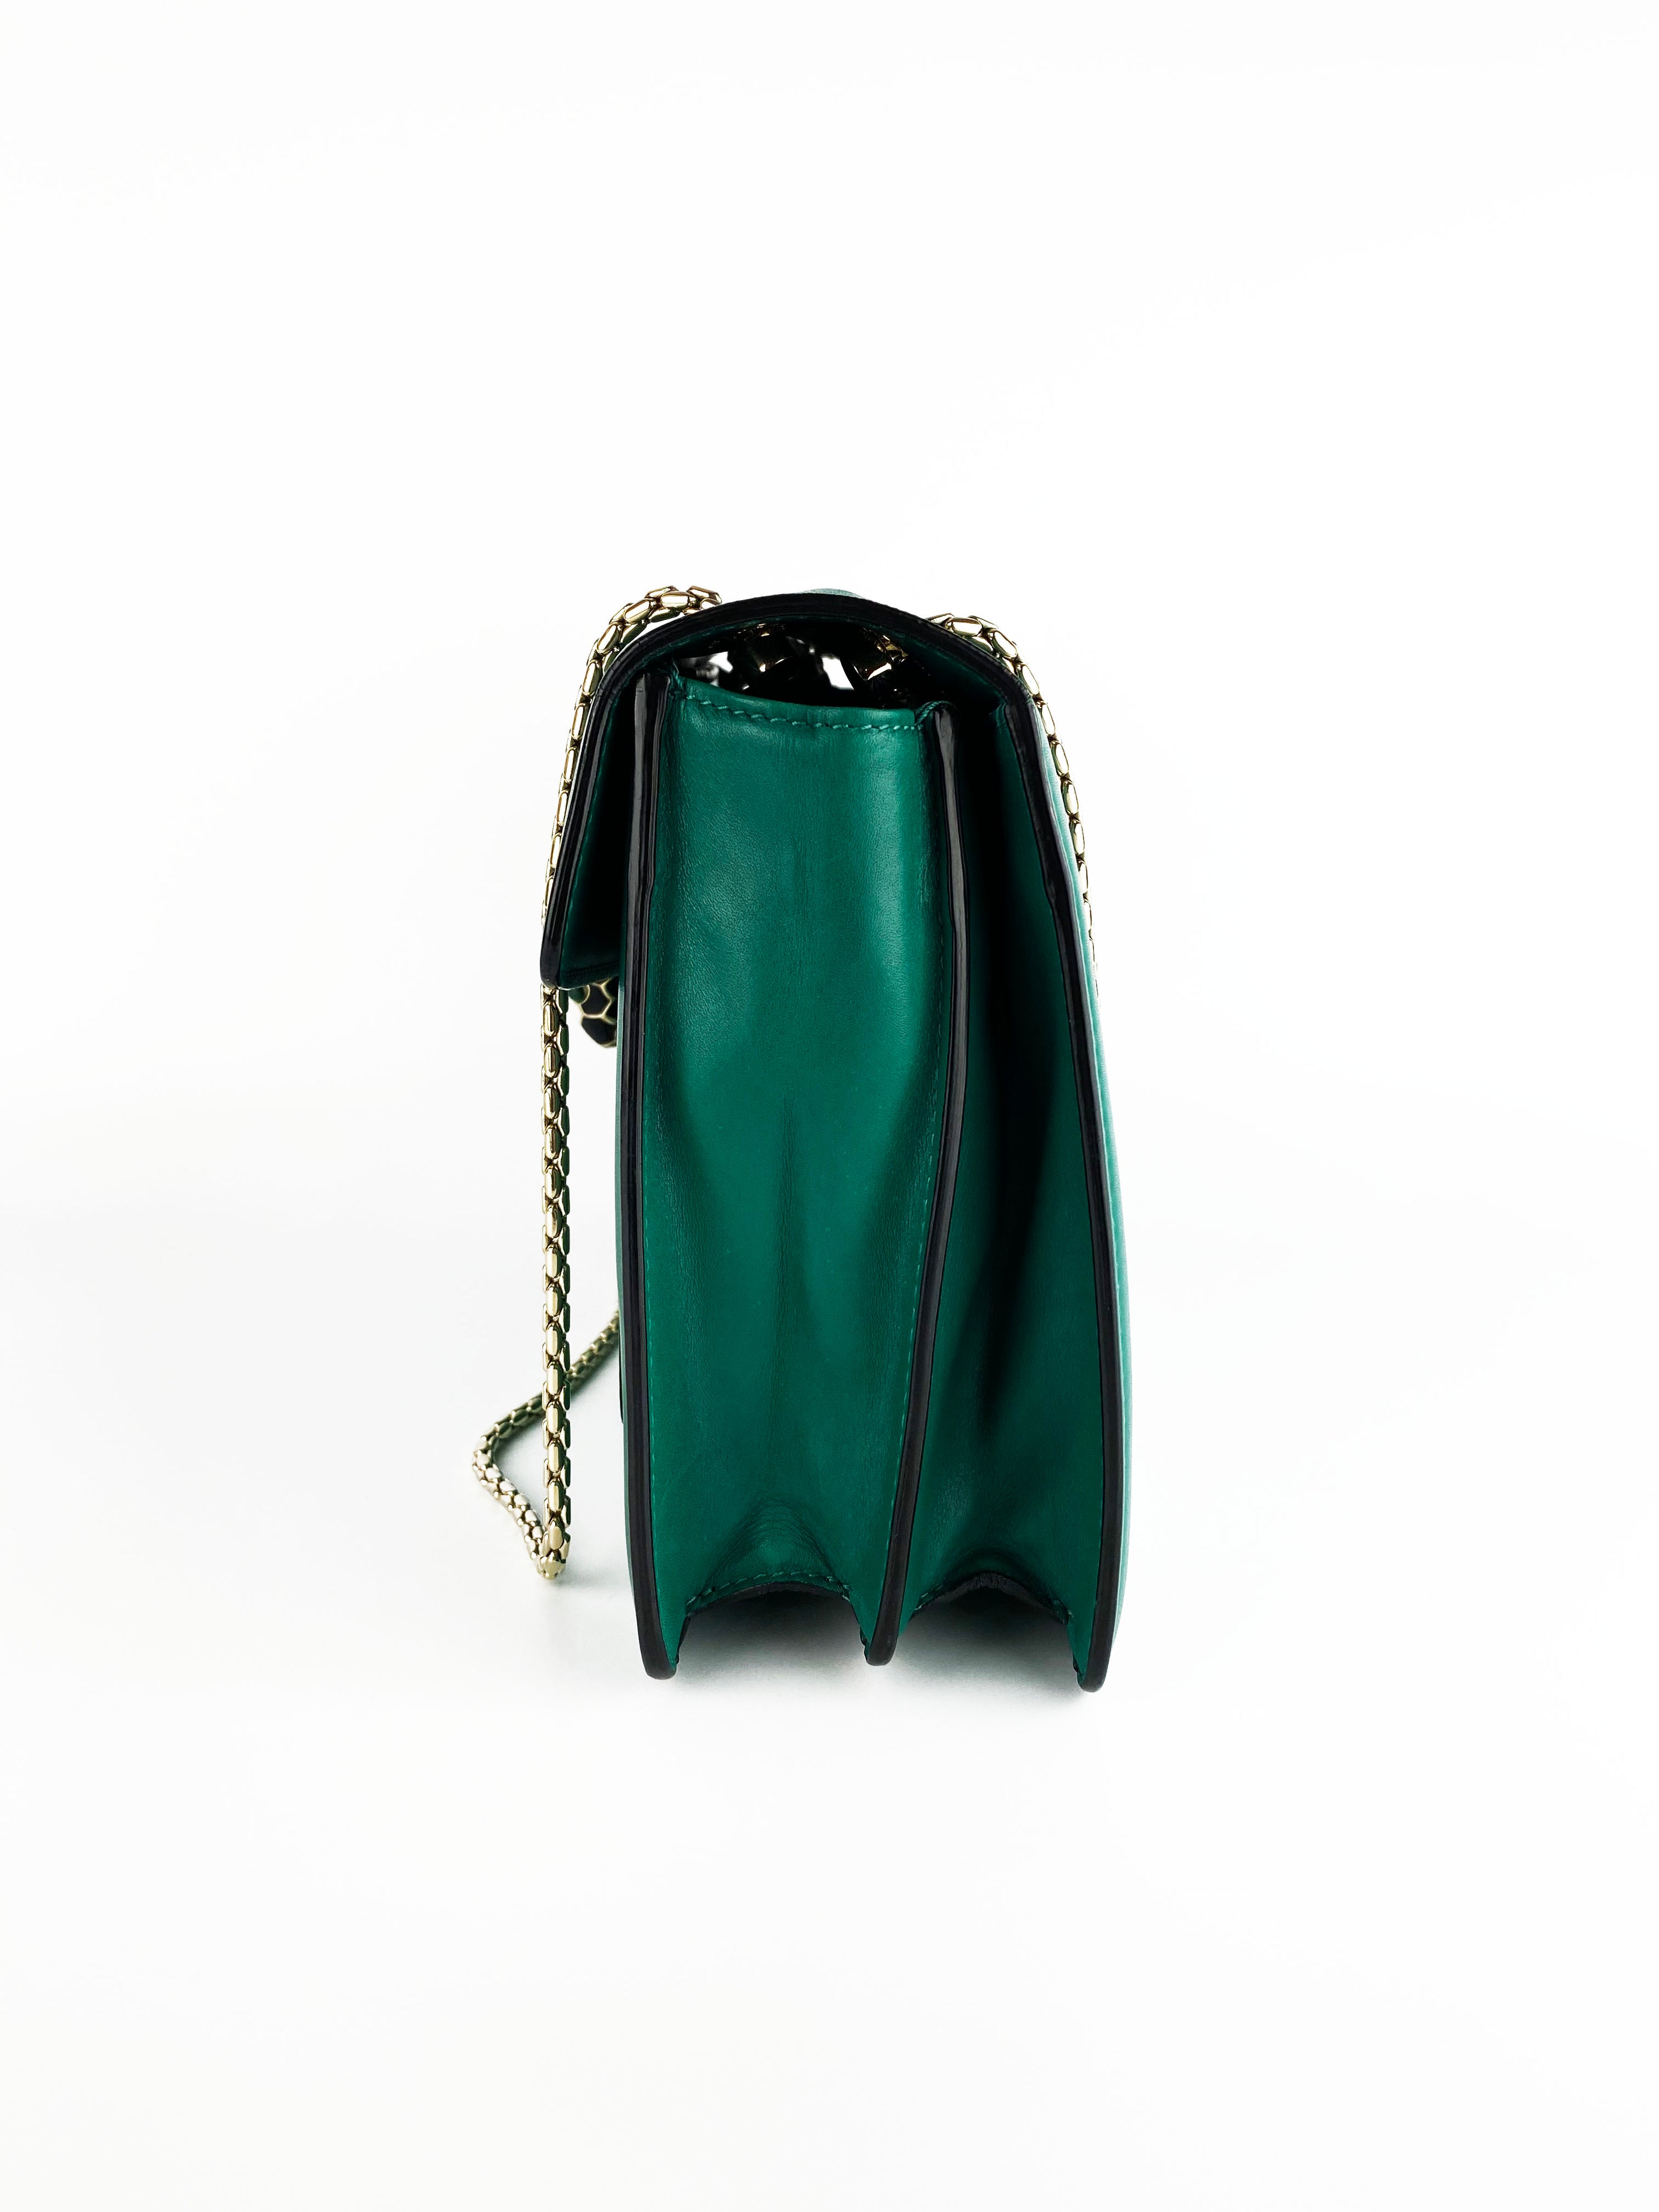 Bvlgari Serpenti Forever Green Shoulder Bag